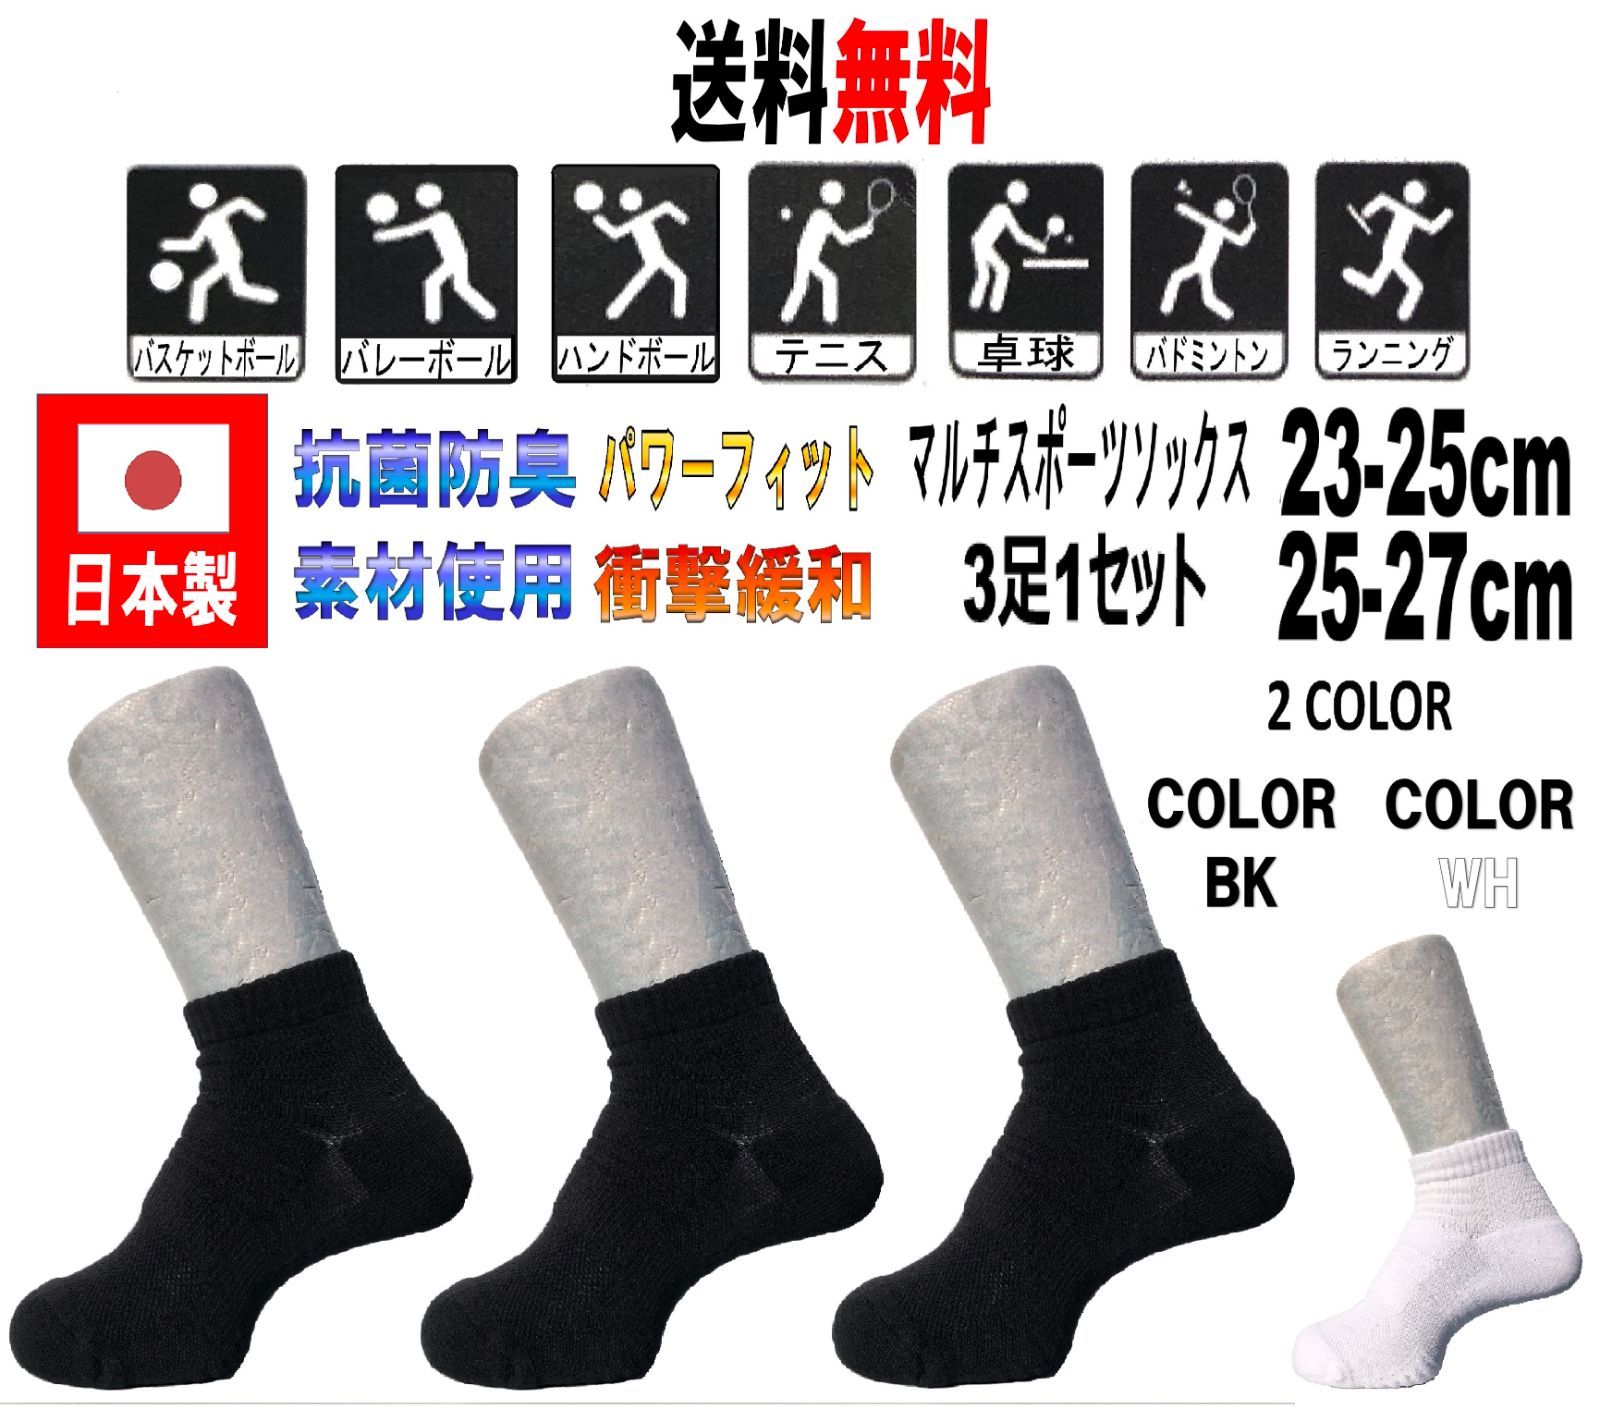 5周年記念イベントが 日本製 マルチスポーツソックス 25-27cm 3足1セット バド WH